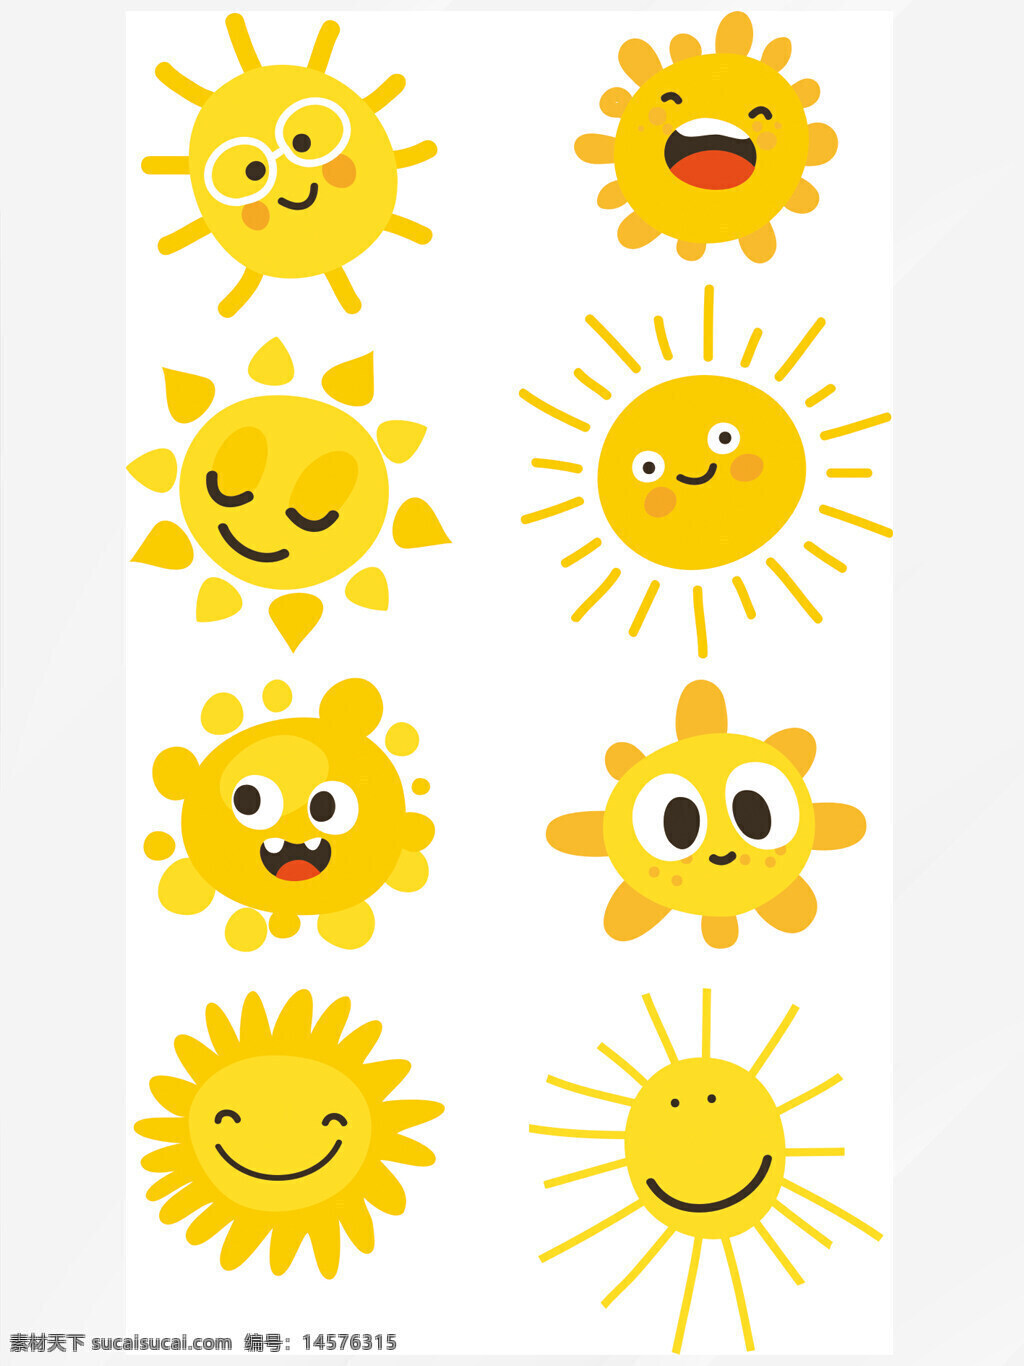 卡通太阳 可爱的太阳 太阳 太阳插画 太阳素材 手绘太阳 卡通太阳素材 自然风景插画 风景素材 阳光 小清新素材 开心的太阳 原创插画 可爱卡通太阳 金色 金太阳 小太阳